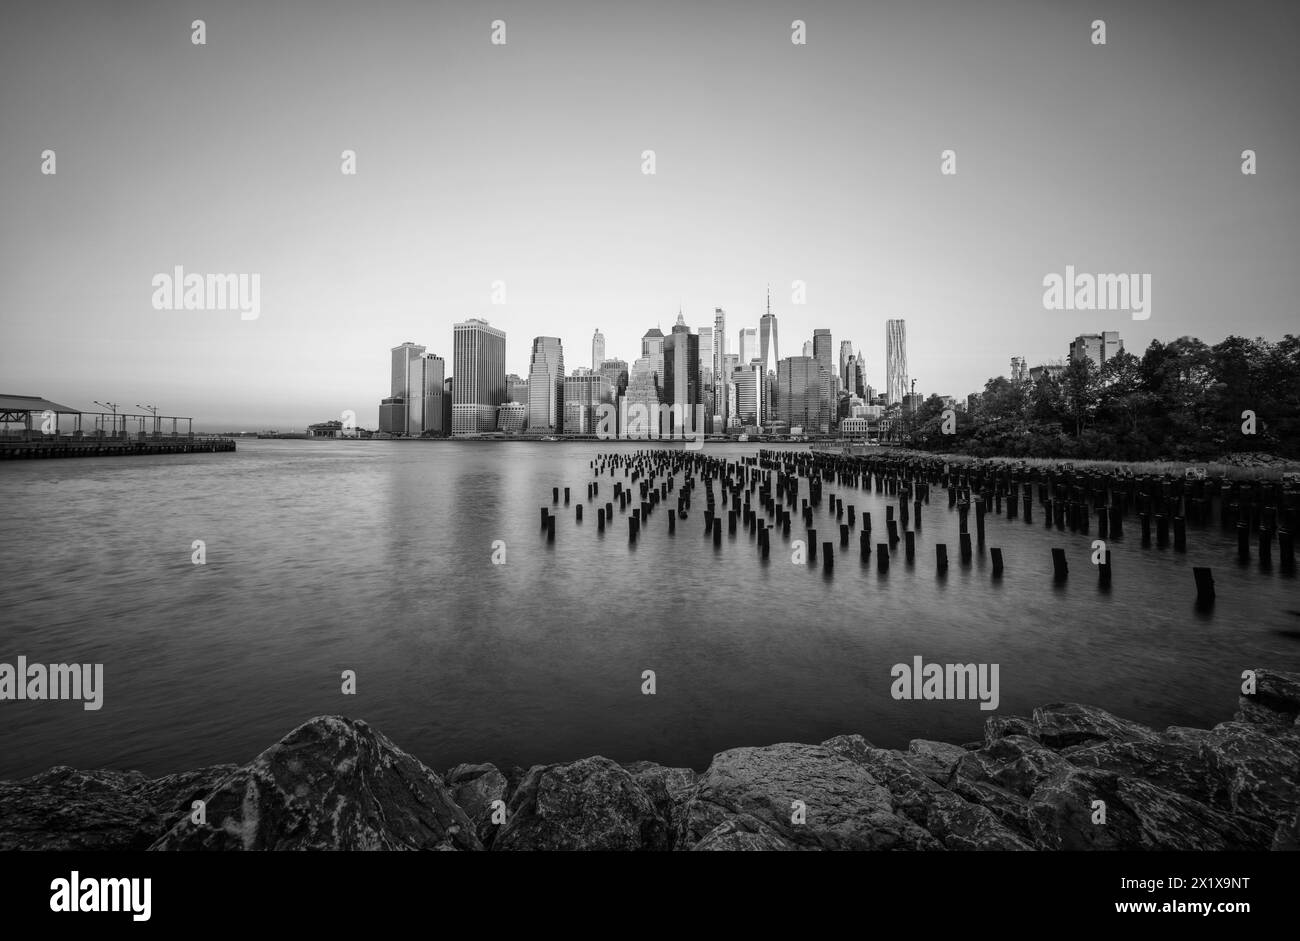 Wolkenkratzer im Finanzviertel Lower Manhattan, die am frühen Morgen New York über den East River vom Old Pier 1 im Brooklyn Bridge Park Greenway aus gesehen werden Stockfoto